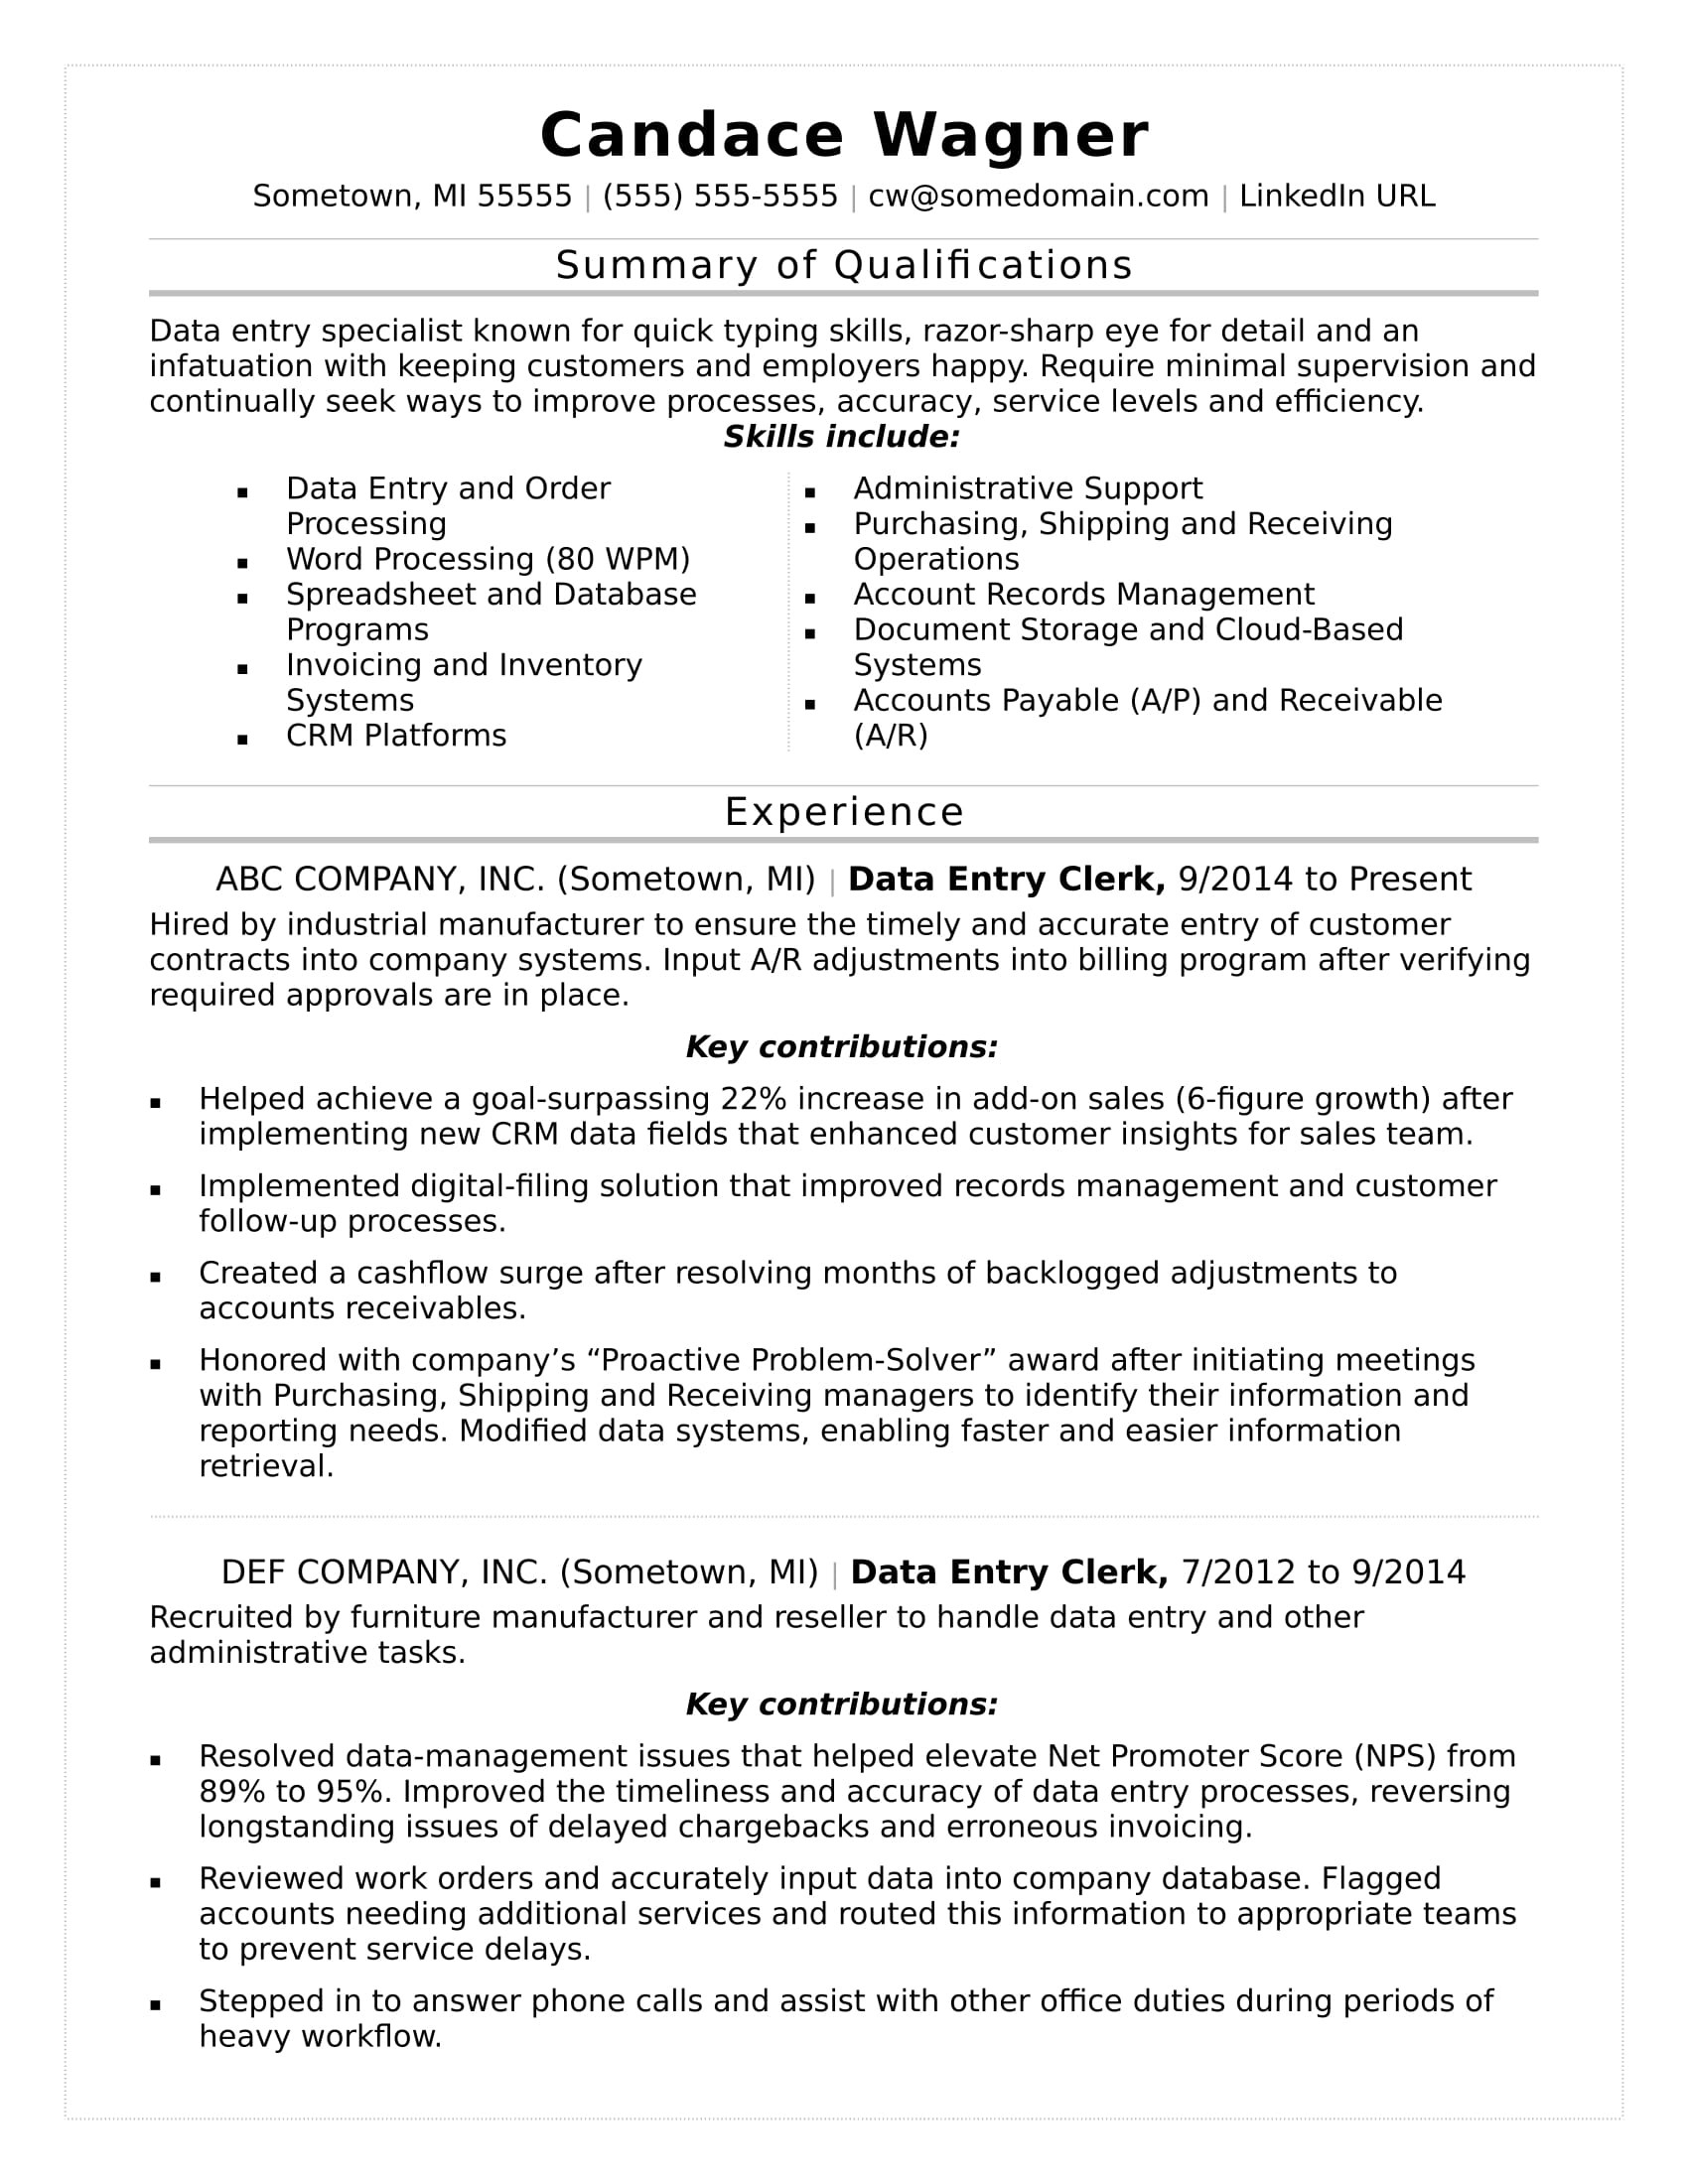 Sample Resumes for Jobs Net Usa Data Entry Resume Monster.com